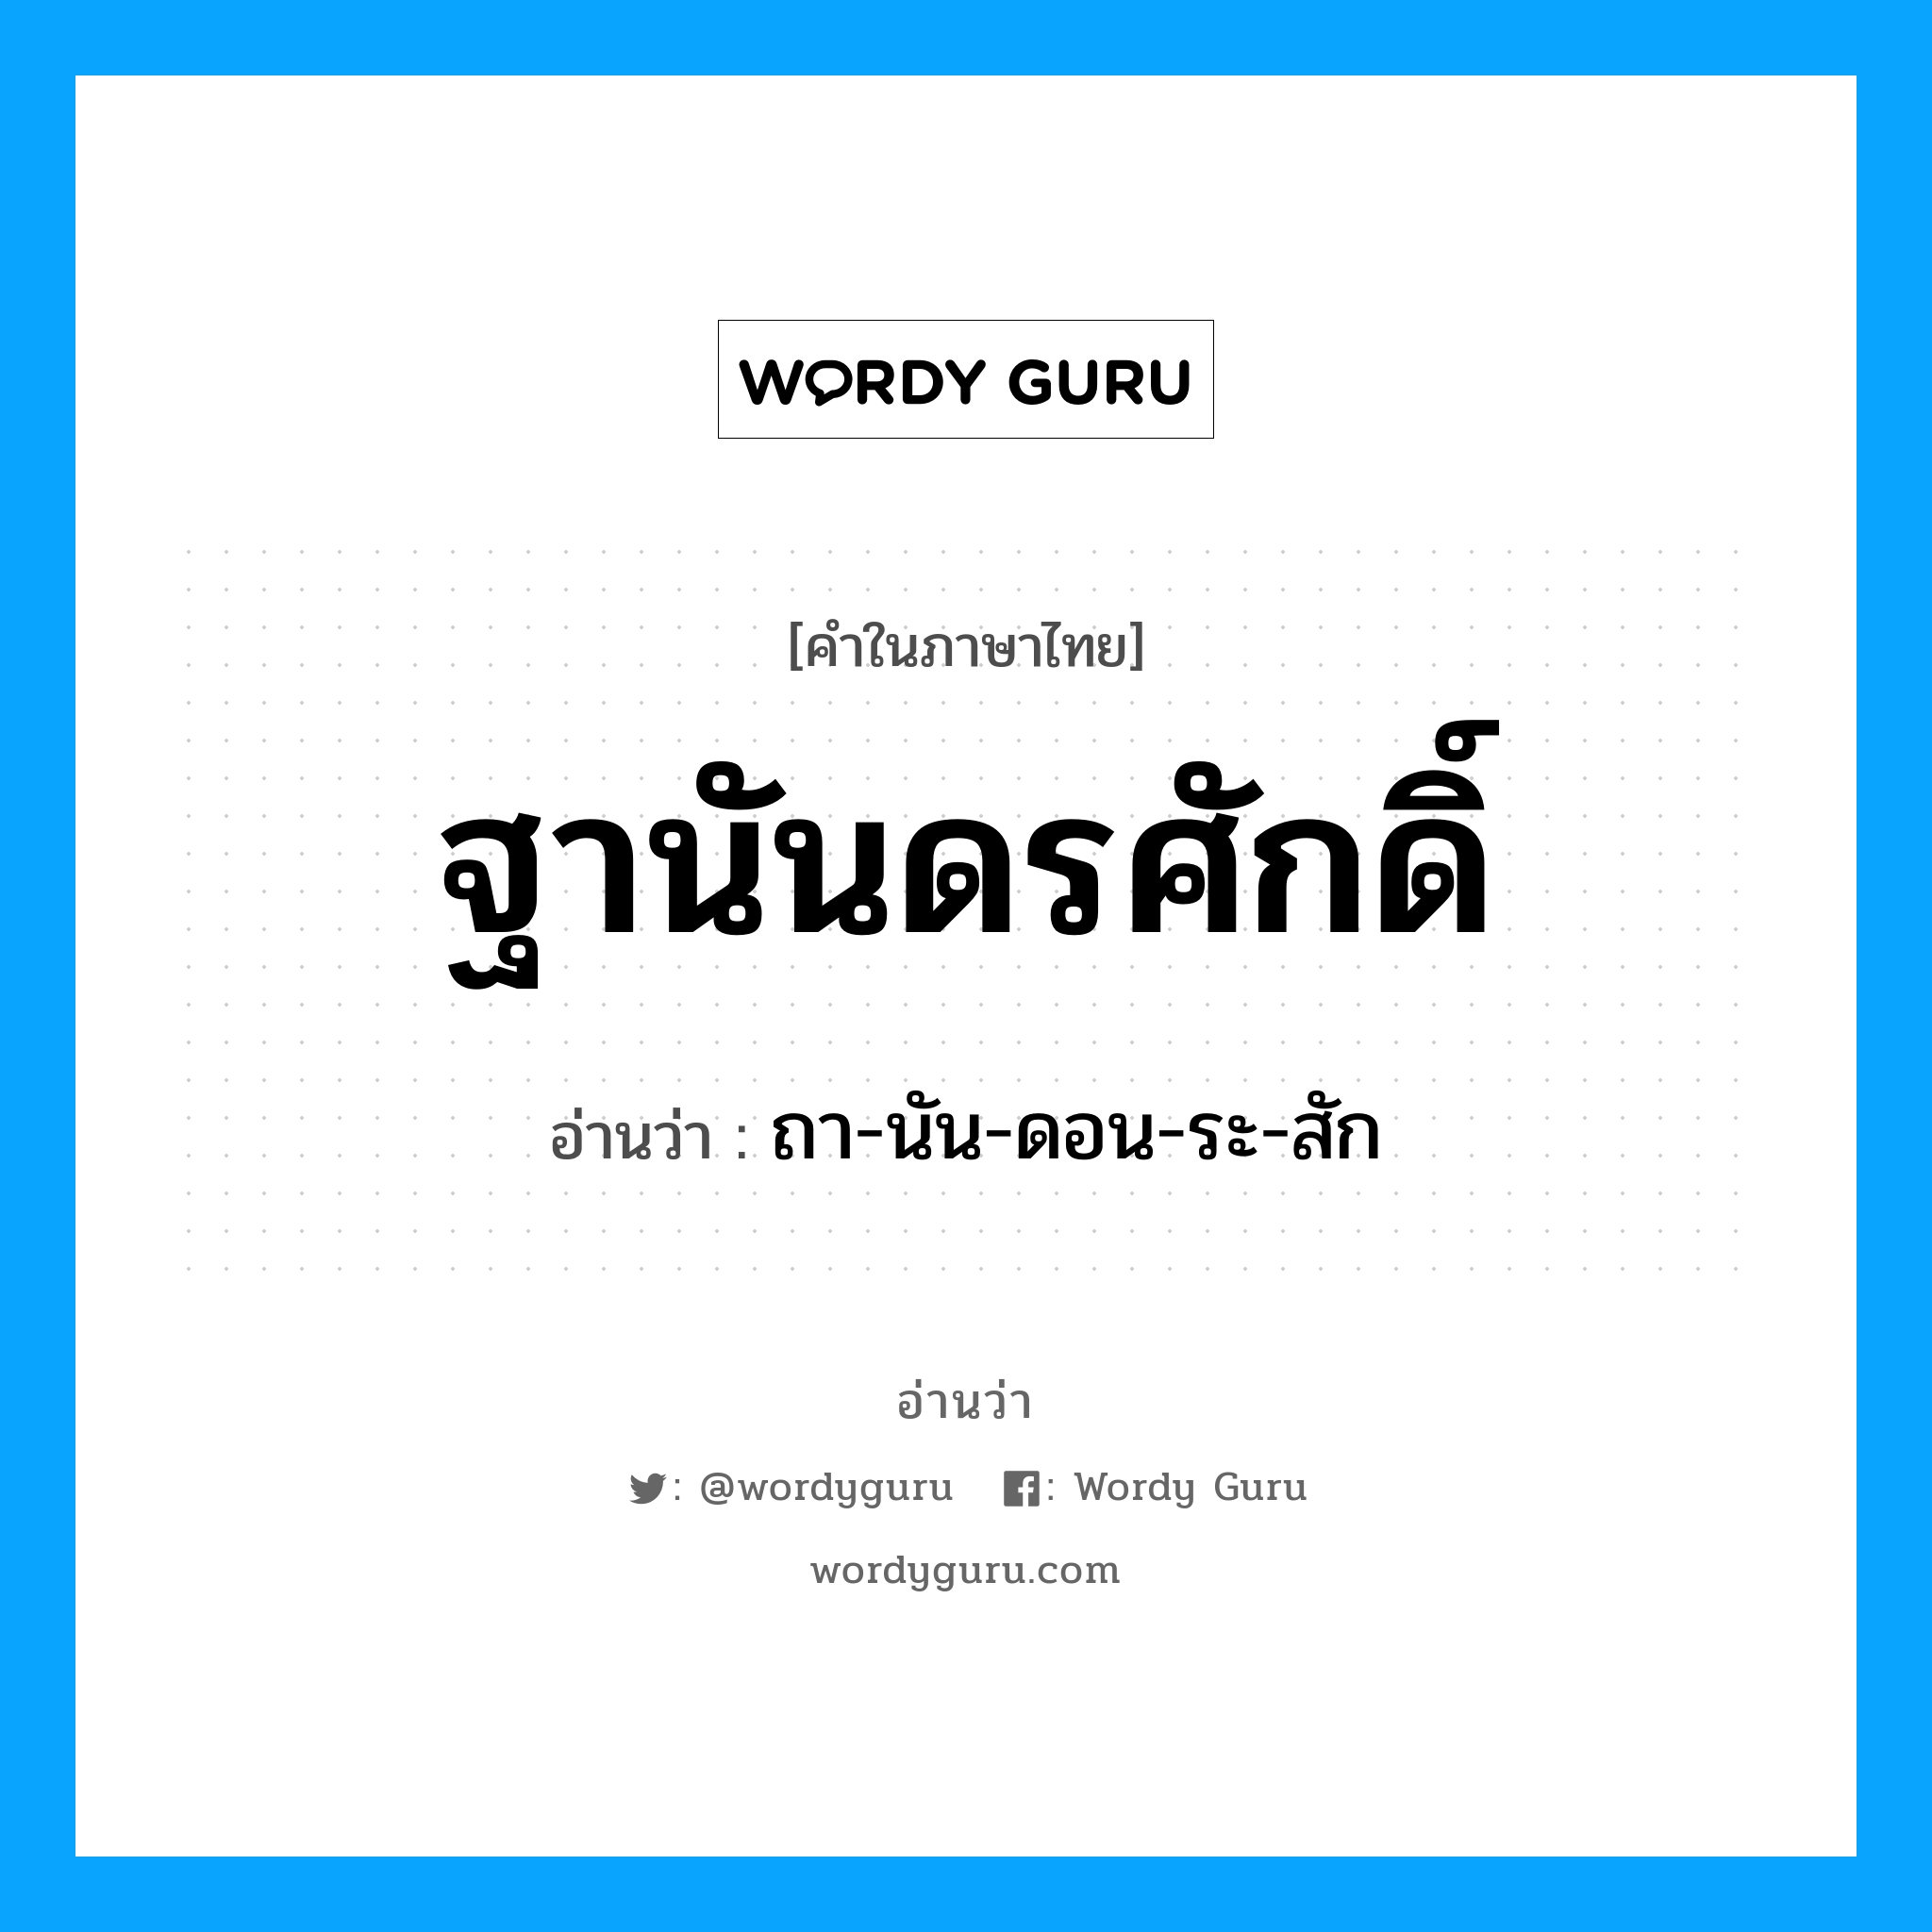 ถา-นัน-ดอน-ระ-สัก เป็นคำอ่านของคำไหน?, คำในภาษาไทย ถา-นัน-ดอน-ระ-สัก อ่านว่า ฐานันดรศักดิ์